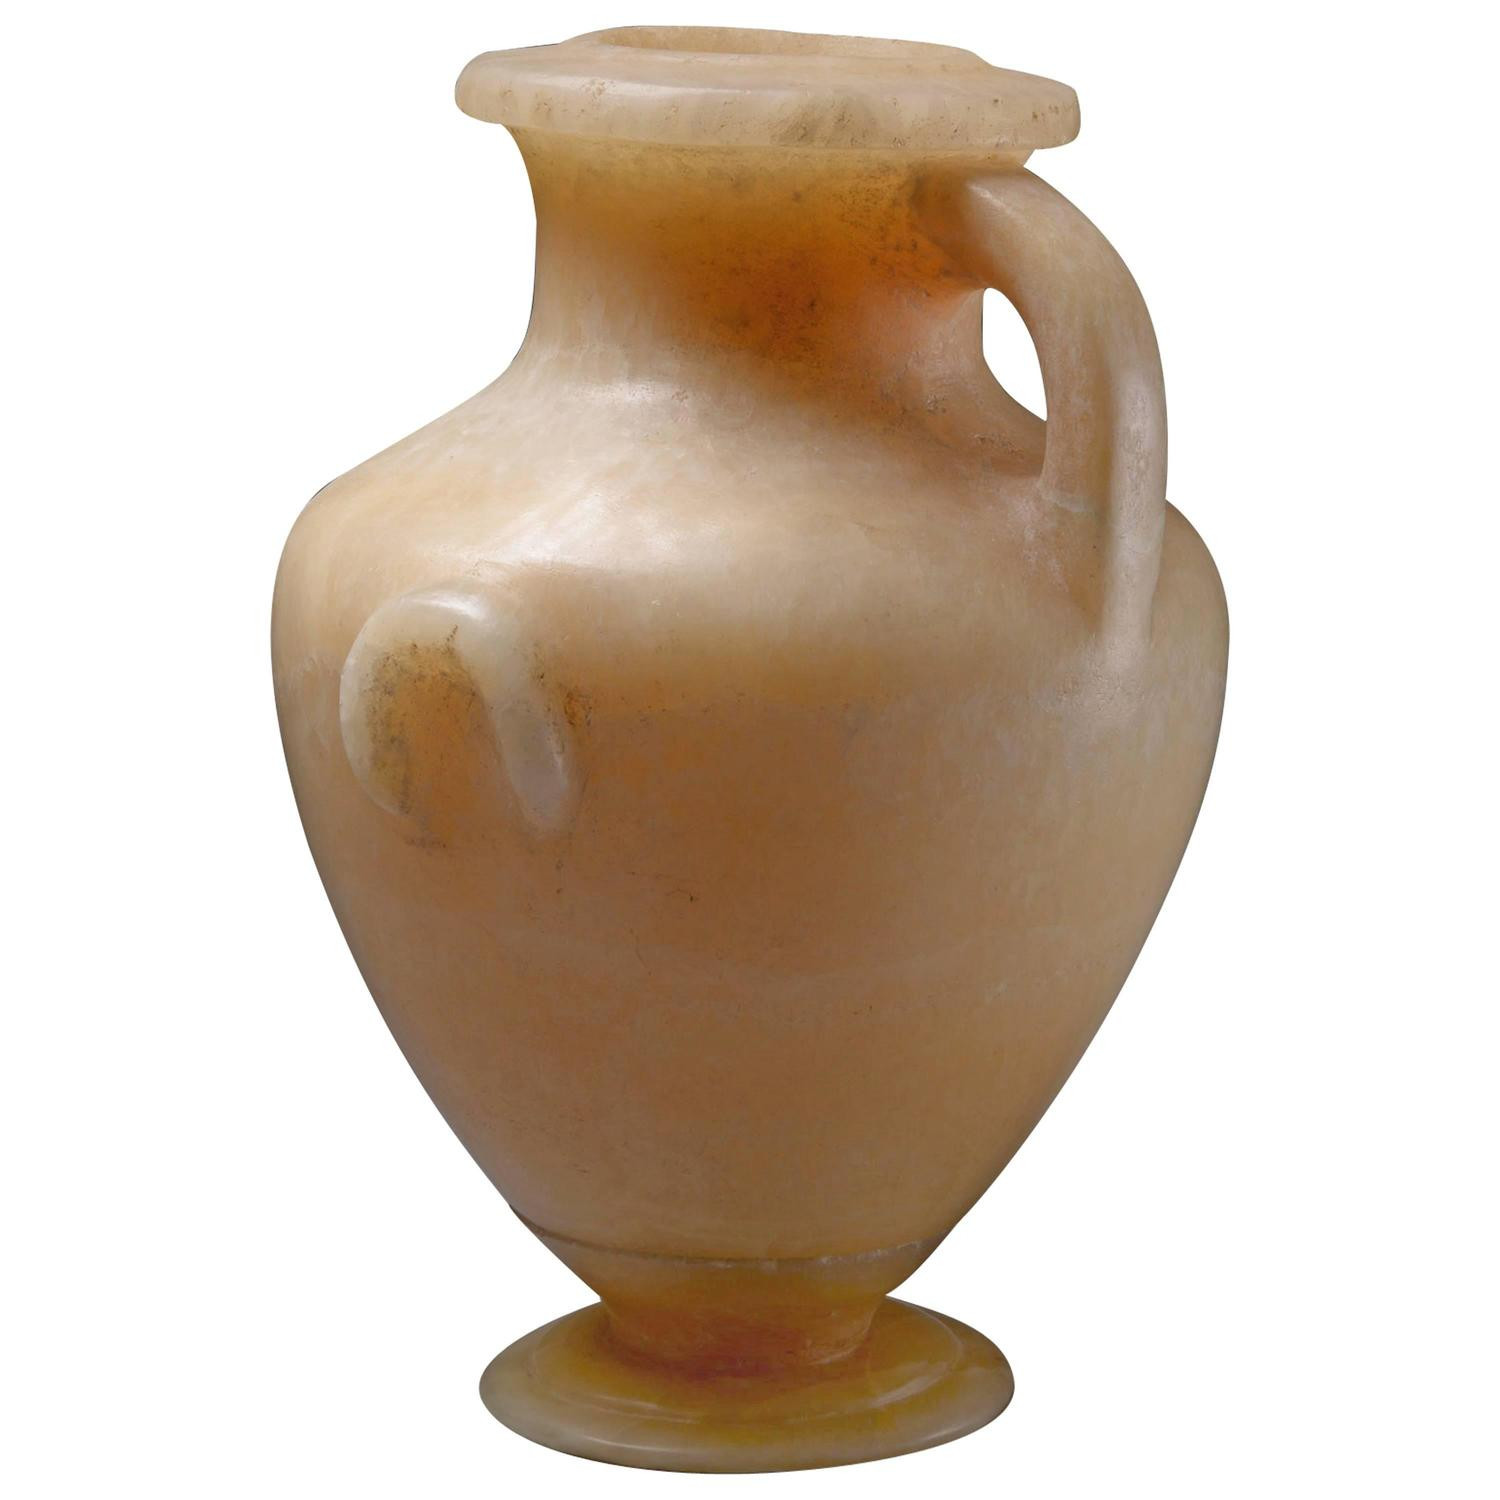 carved alabaster vase of elegant ancient egyptian alabaster vase 250 bc for sale at 1stdibs throughout 4836373 z